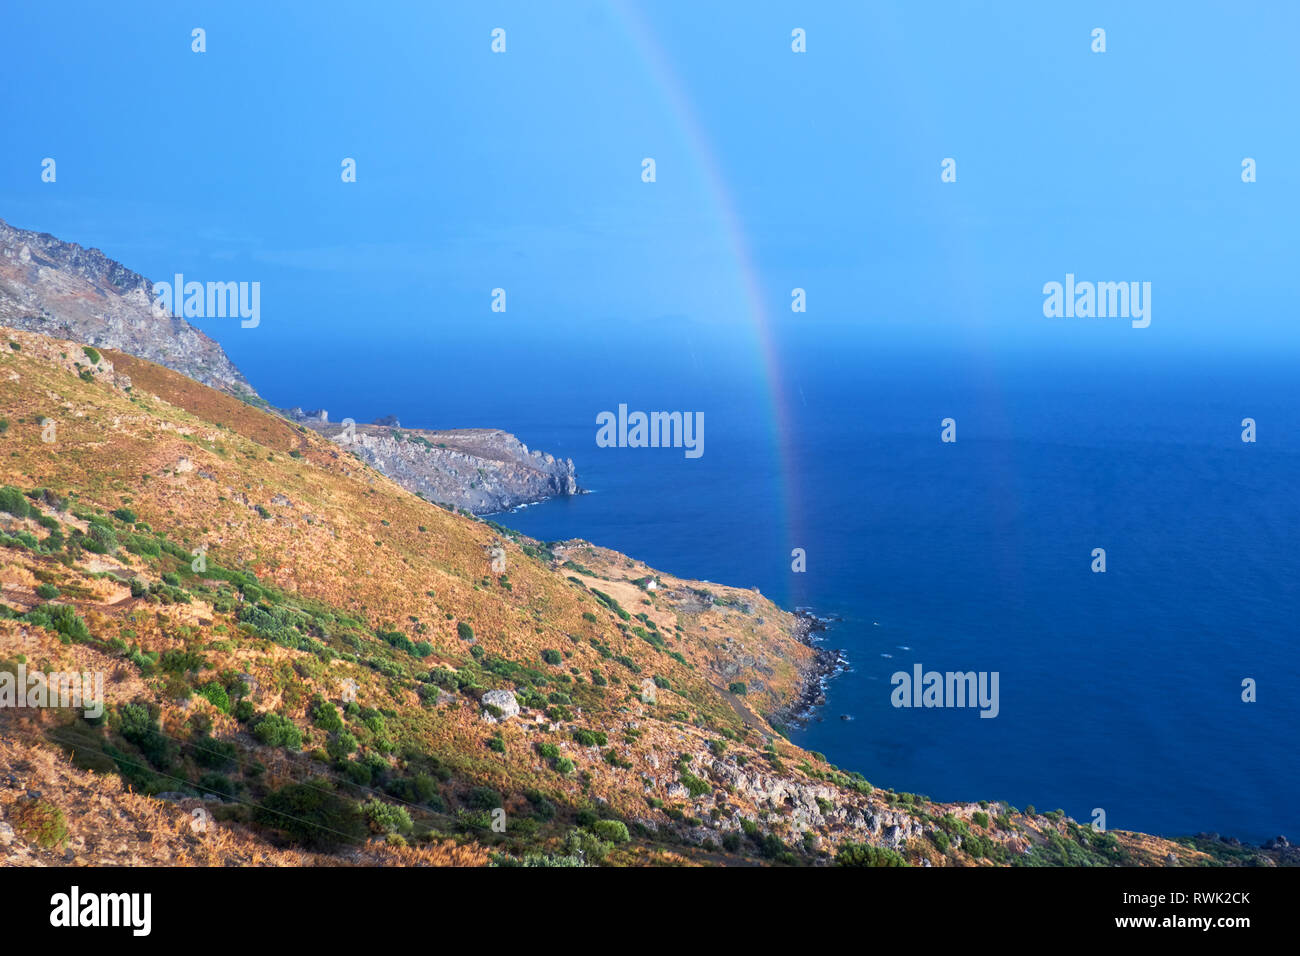 Selvatica costa collinare di Creta isola dopo una pioggia con un arcobaleno Foto Stock